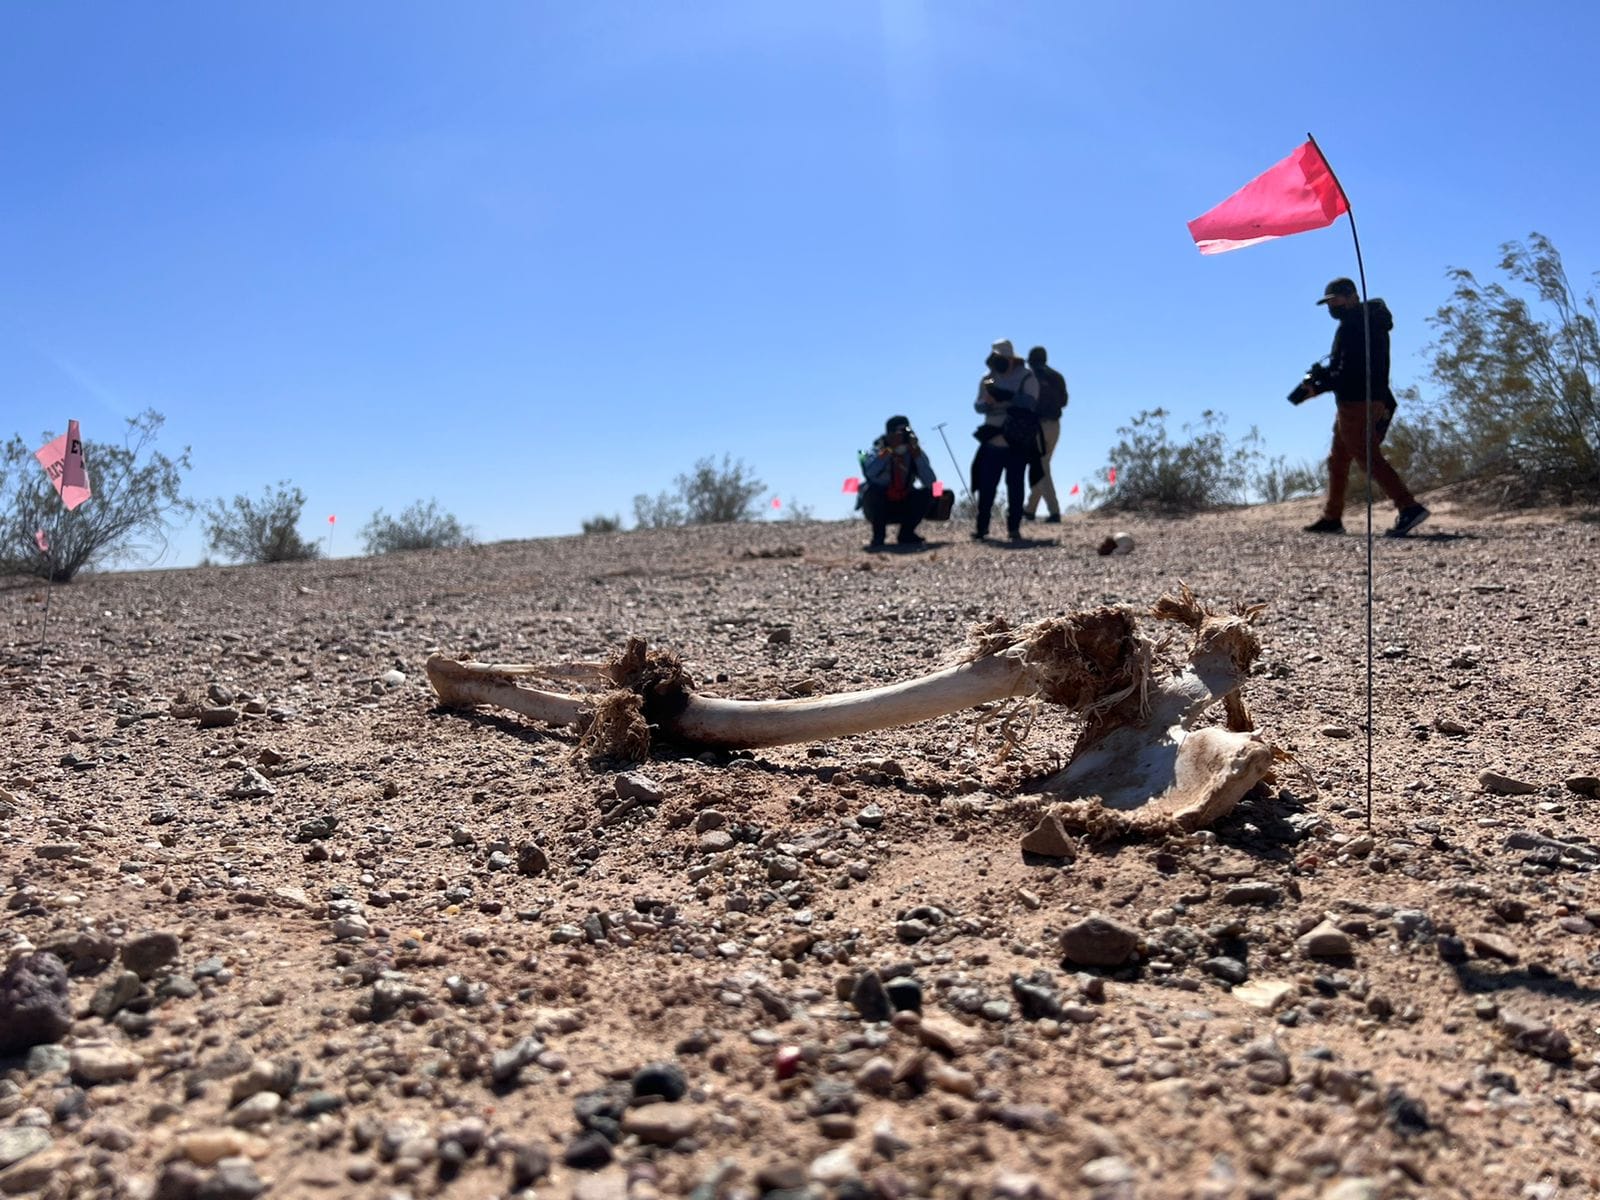 Parte de una osamenta humana se observa en primer plano. Fue encontrada en la zona desértica en la frontera de San Luis Río Colorado durante la Jornada Internacional de Búsqueda, realizada en febrero. Crédito: Colectivo Buscadoras por la Paz Sonora.